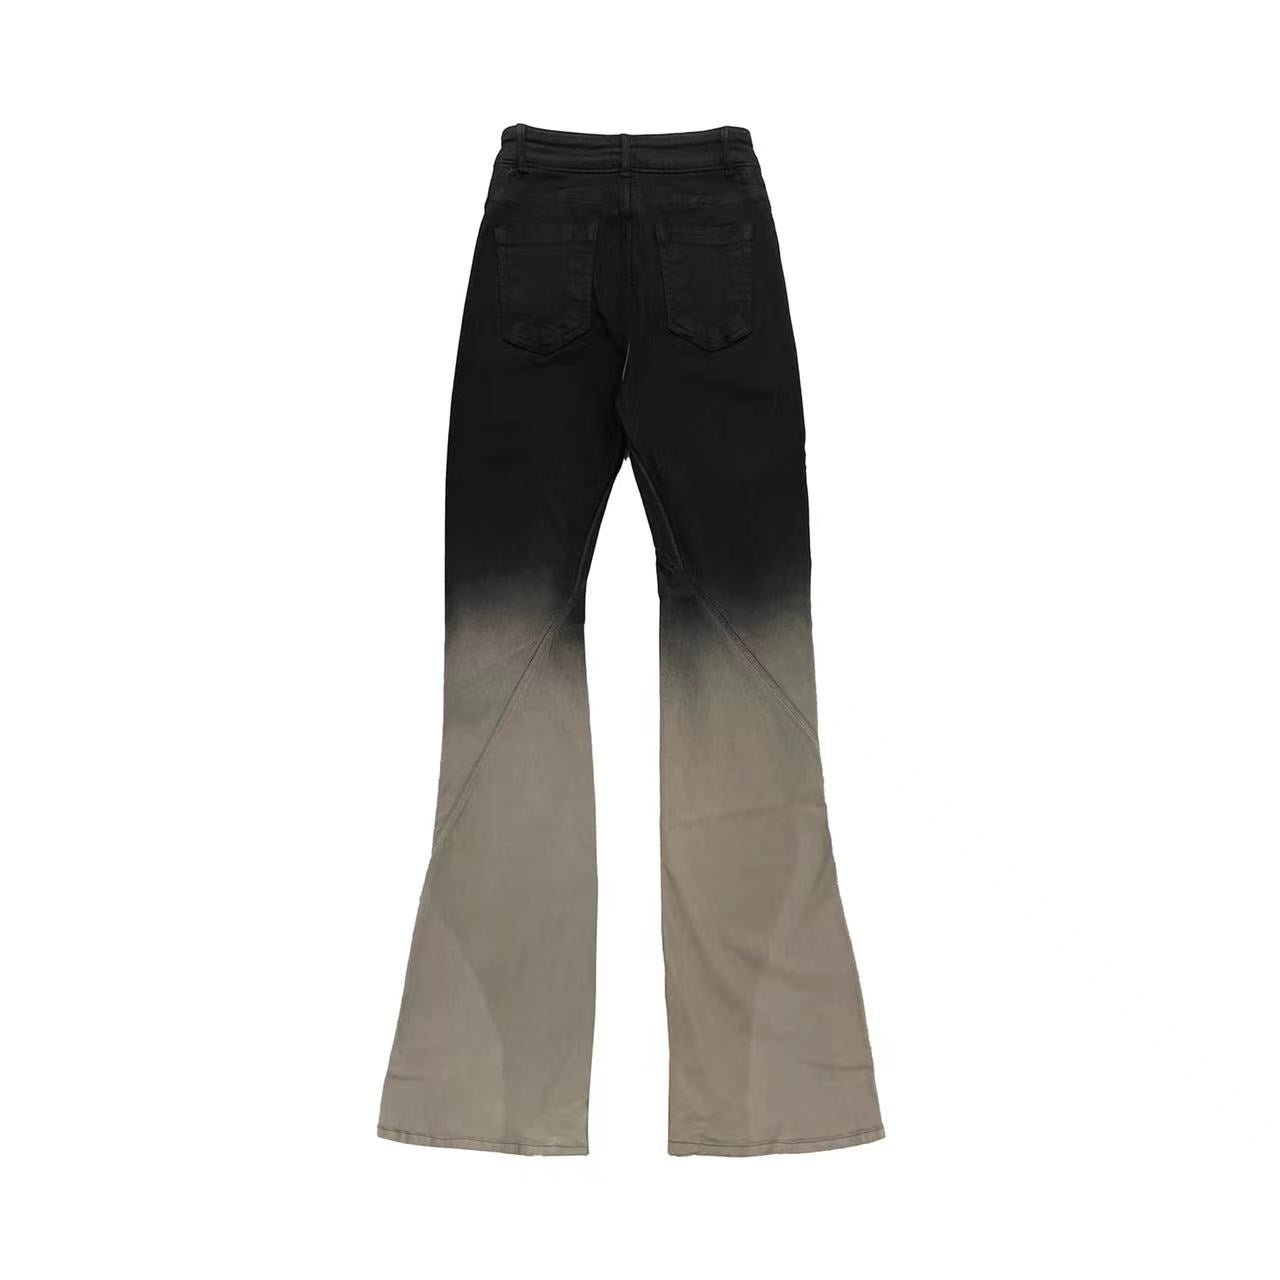 RICK OWENS DRKSHDW Women's Black & Off-White Bias Bootcut Jeans - SHENGLI ROAD MARKET